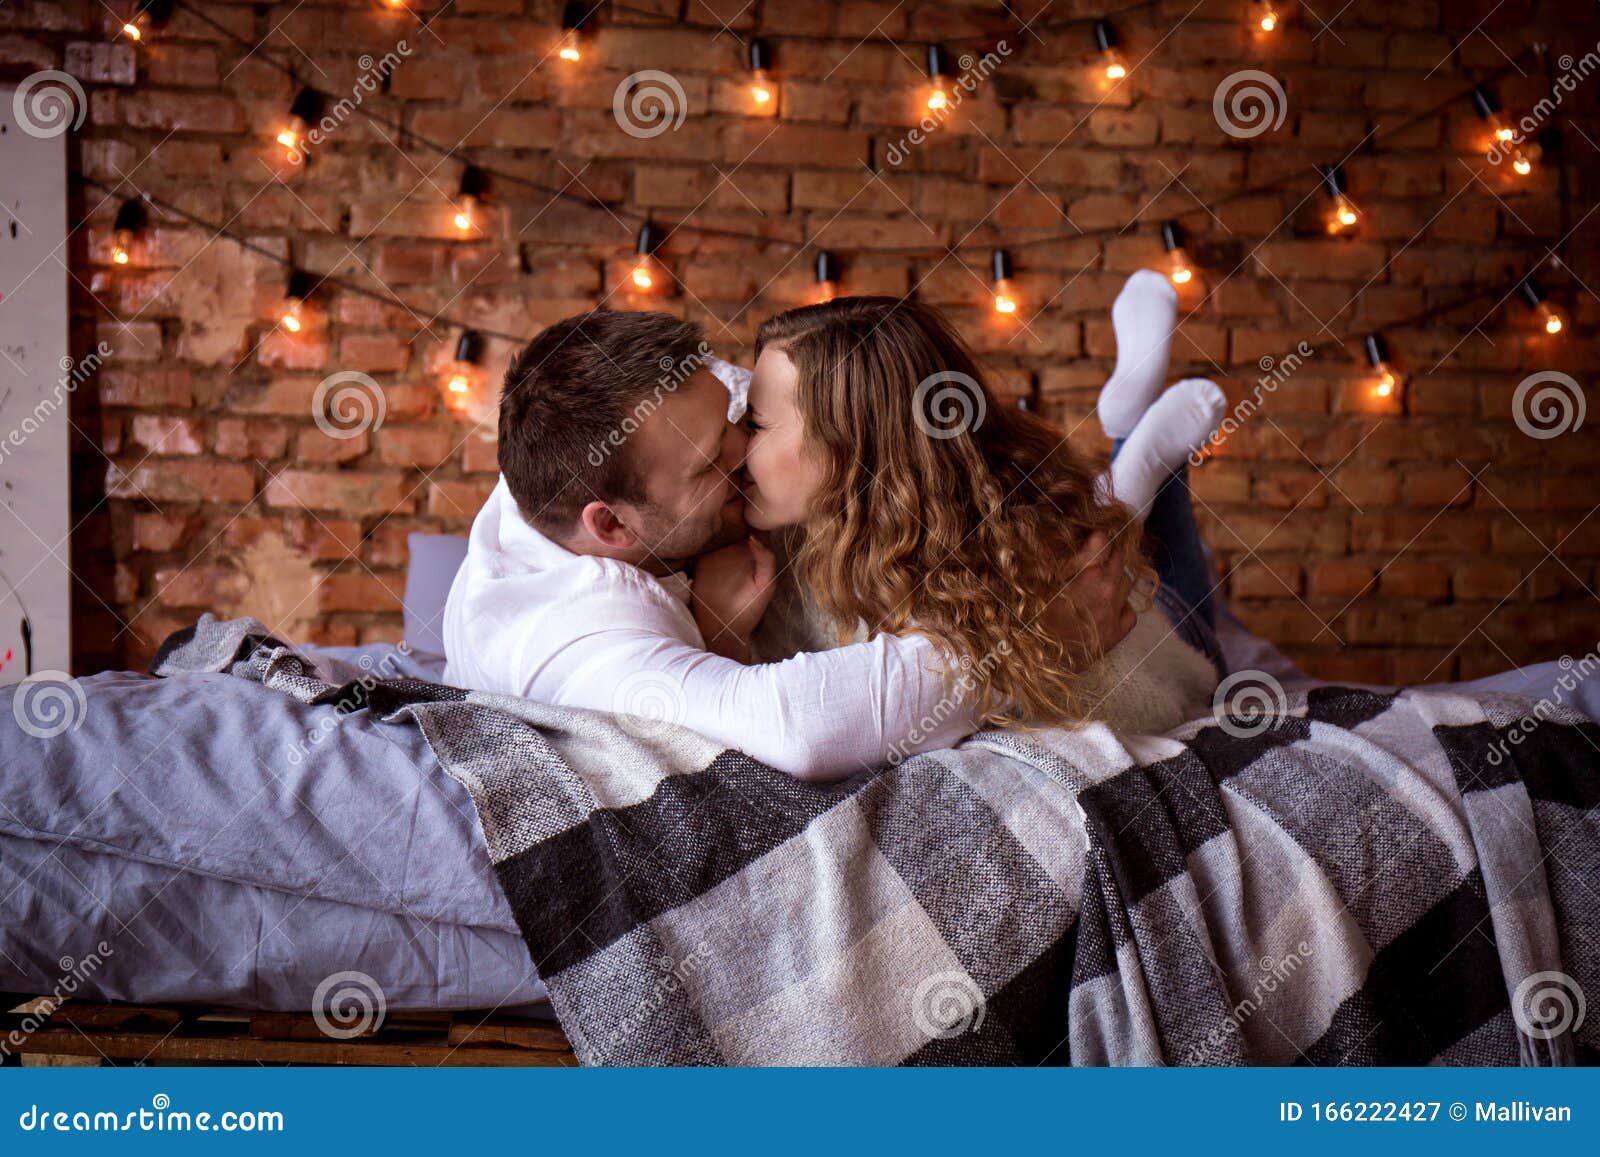 Поцелуй В Кровати Фото